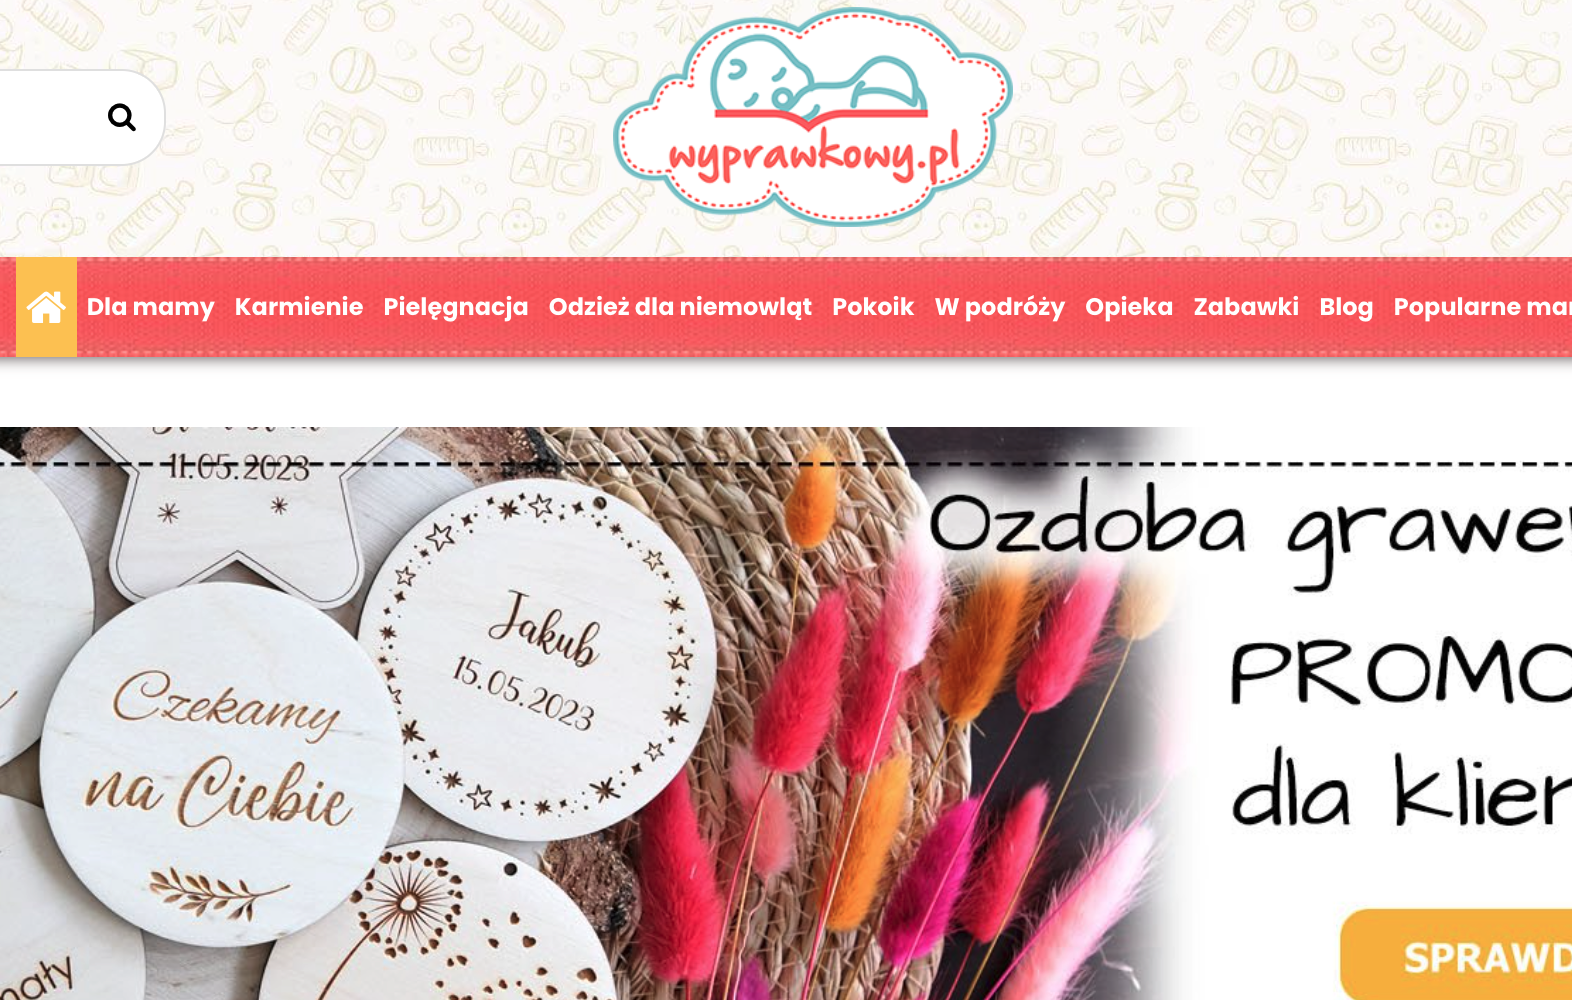 wyprawkowy.pl: widok sklepu internetowego